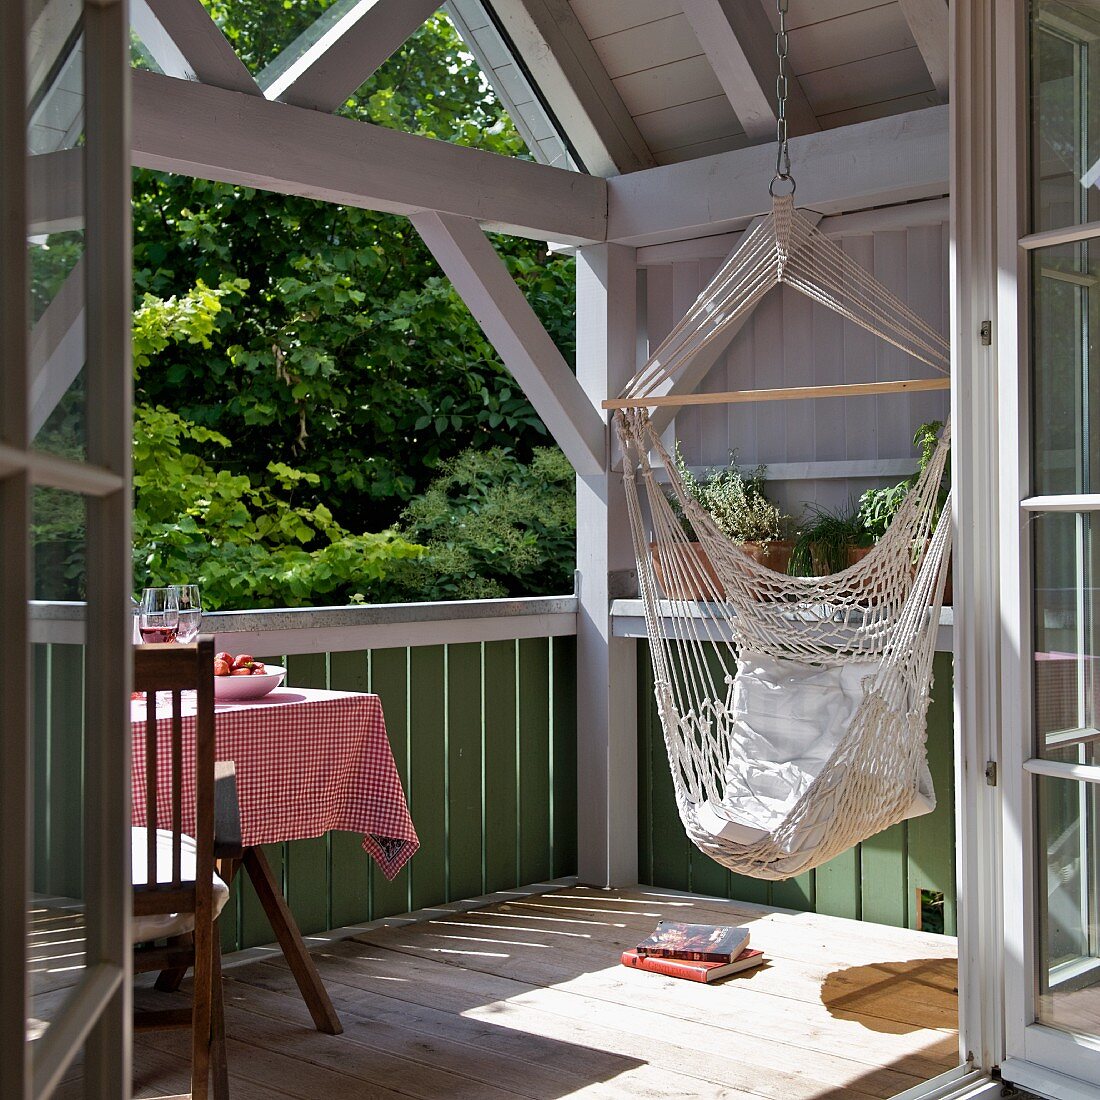 Relaxing in a hammock - view of sunny balcony through open door of wooden house